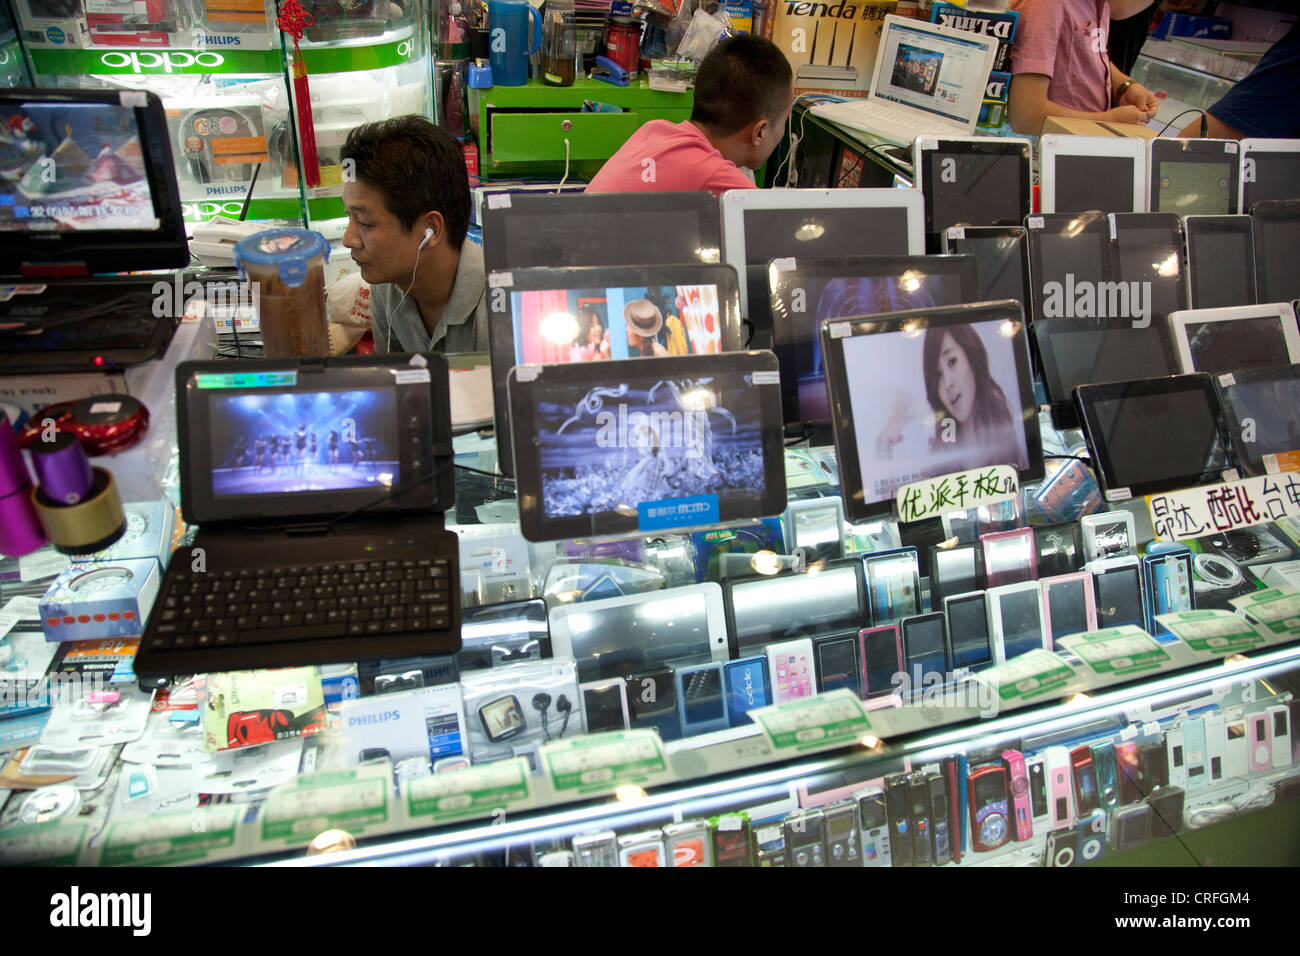 Computer-Verkäufer in digitalen Quadrat e-Plaza Einkaufszentrum. Zhongguancun oder Zhong Guan Cun, Technologiezentrum, Beijing, China. Stockfoto